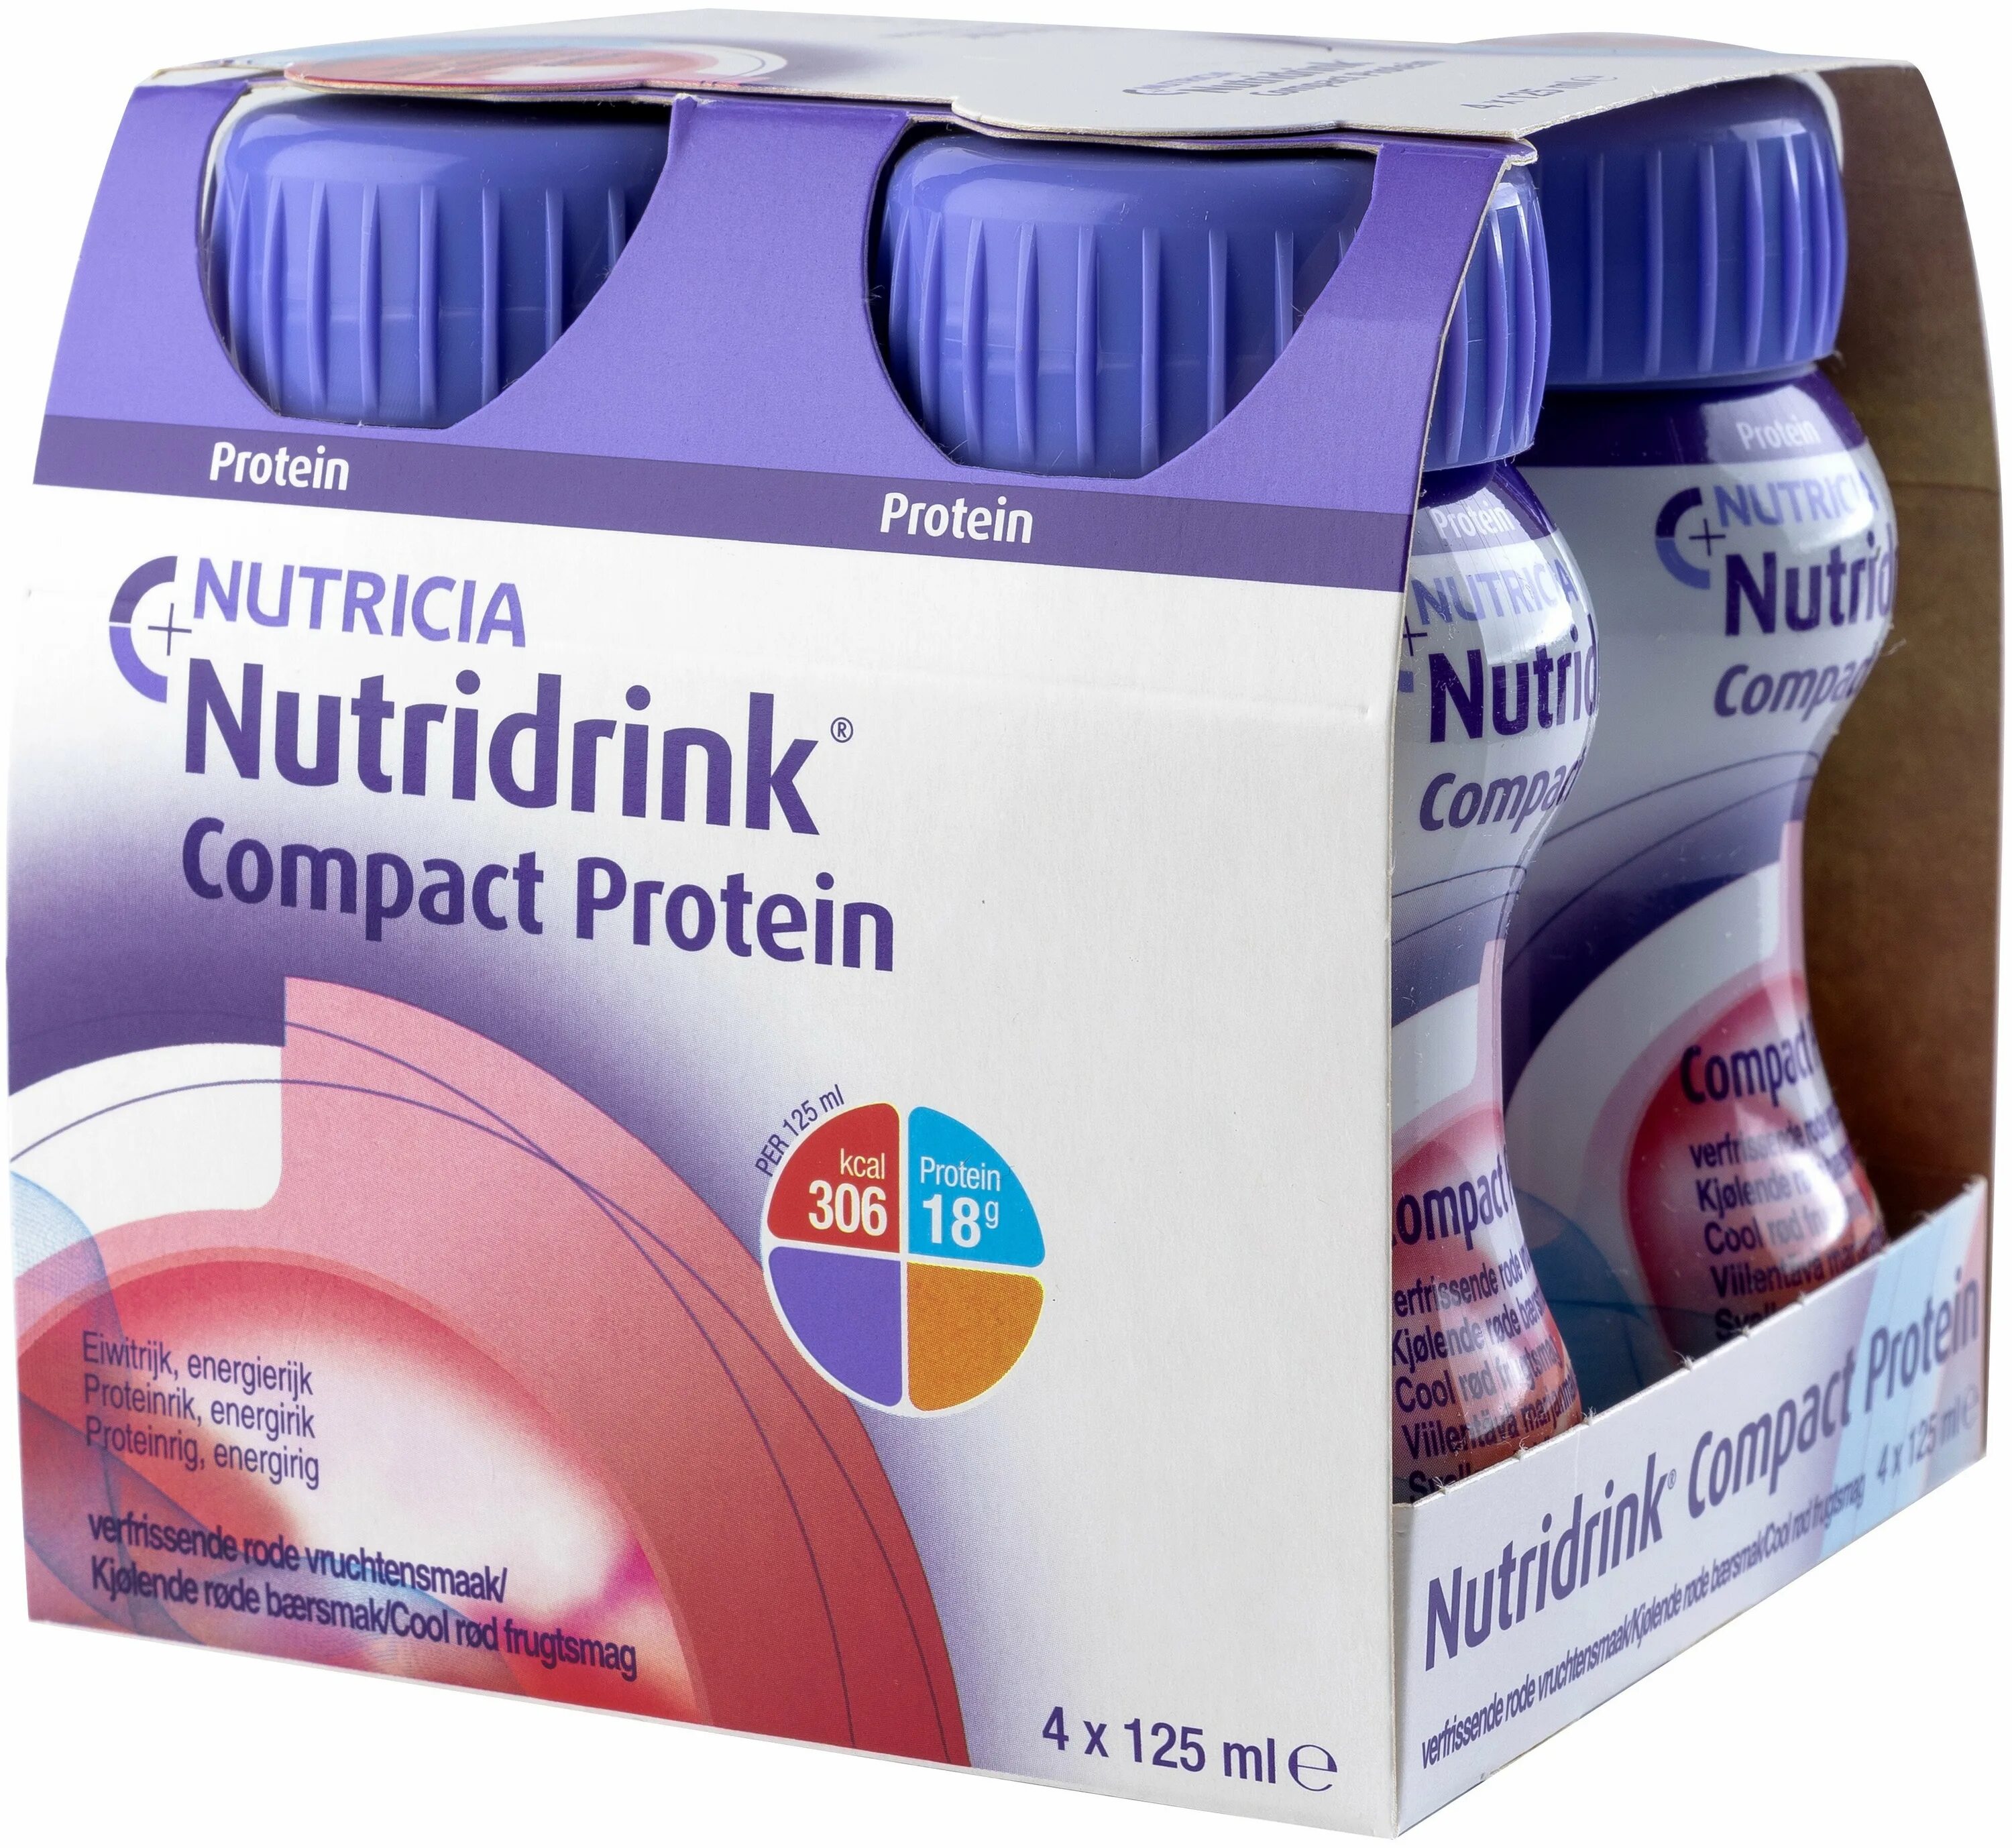 Nutridrink compact protein отзывы. Нутридринк компакт протеин 125 мл. Nutridrink (Nutricia) Compact Protein, 4 шт., готовое к употреблению, 125 мл. Нутридринк компакт смесь 125 мл 4 шт.. Нутридринк компакт нейтральный смесь 125 мл №4.